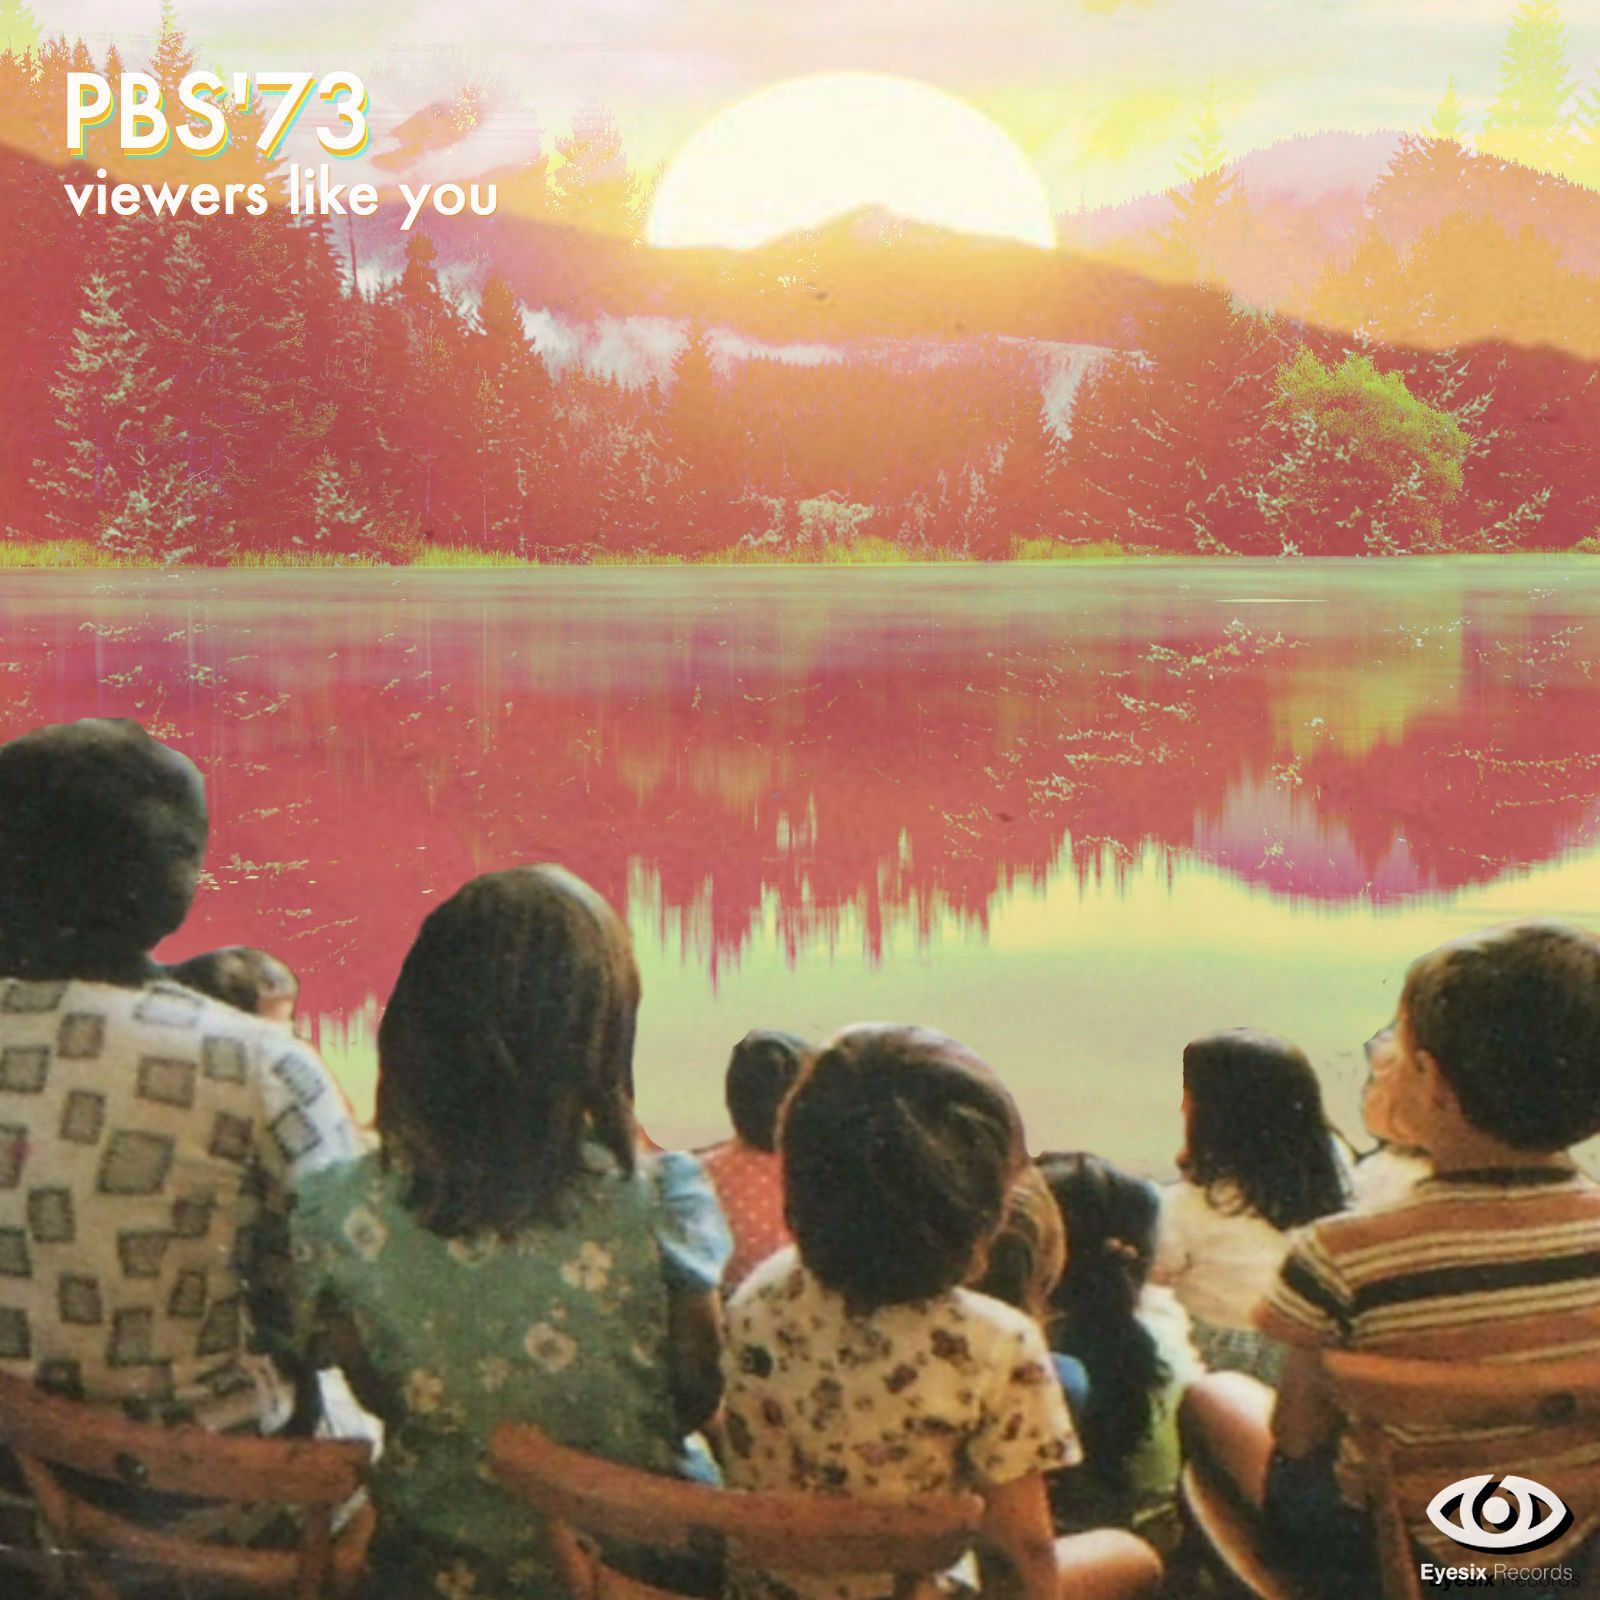 PBS’73